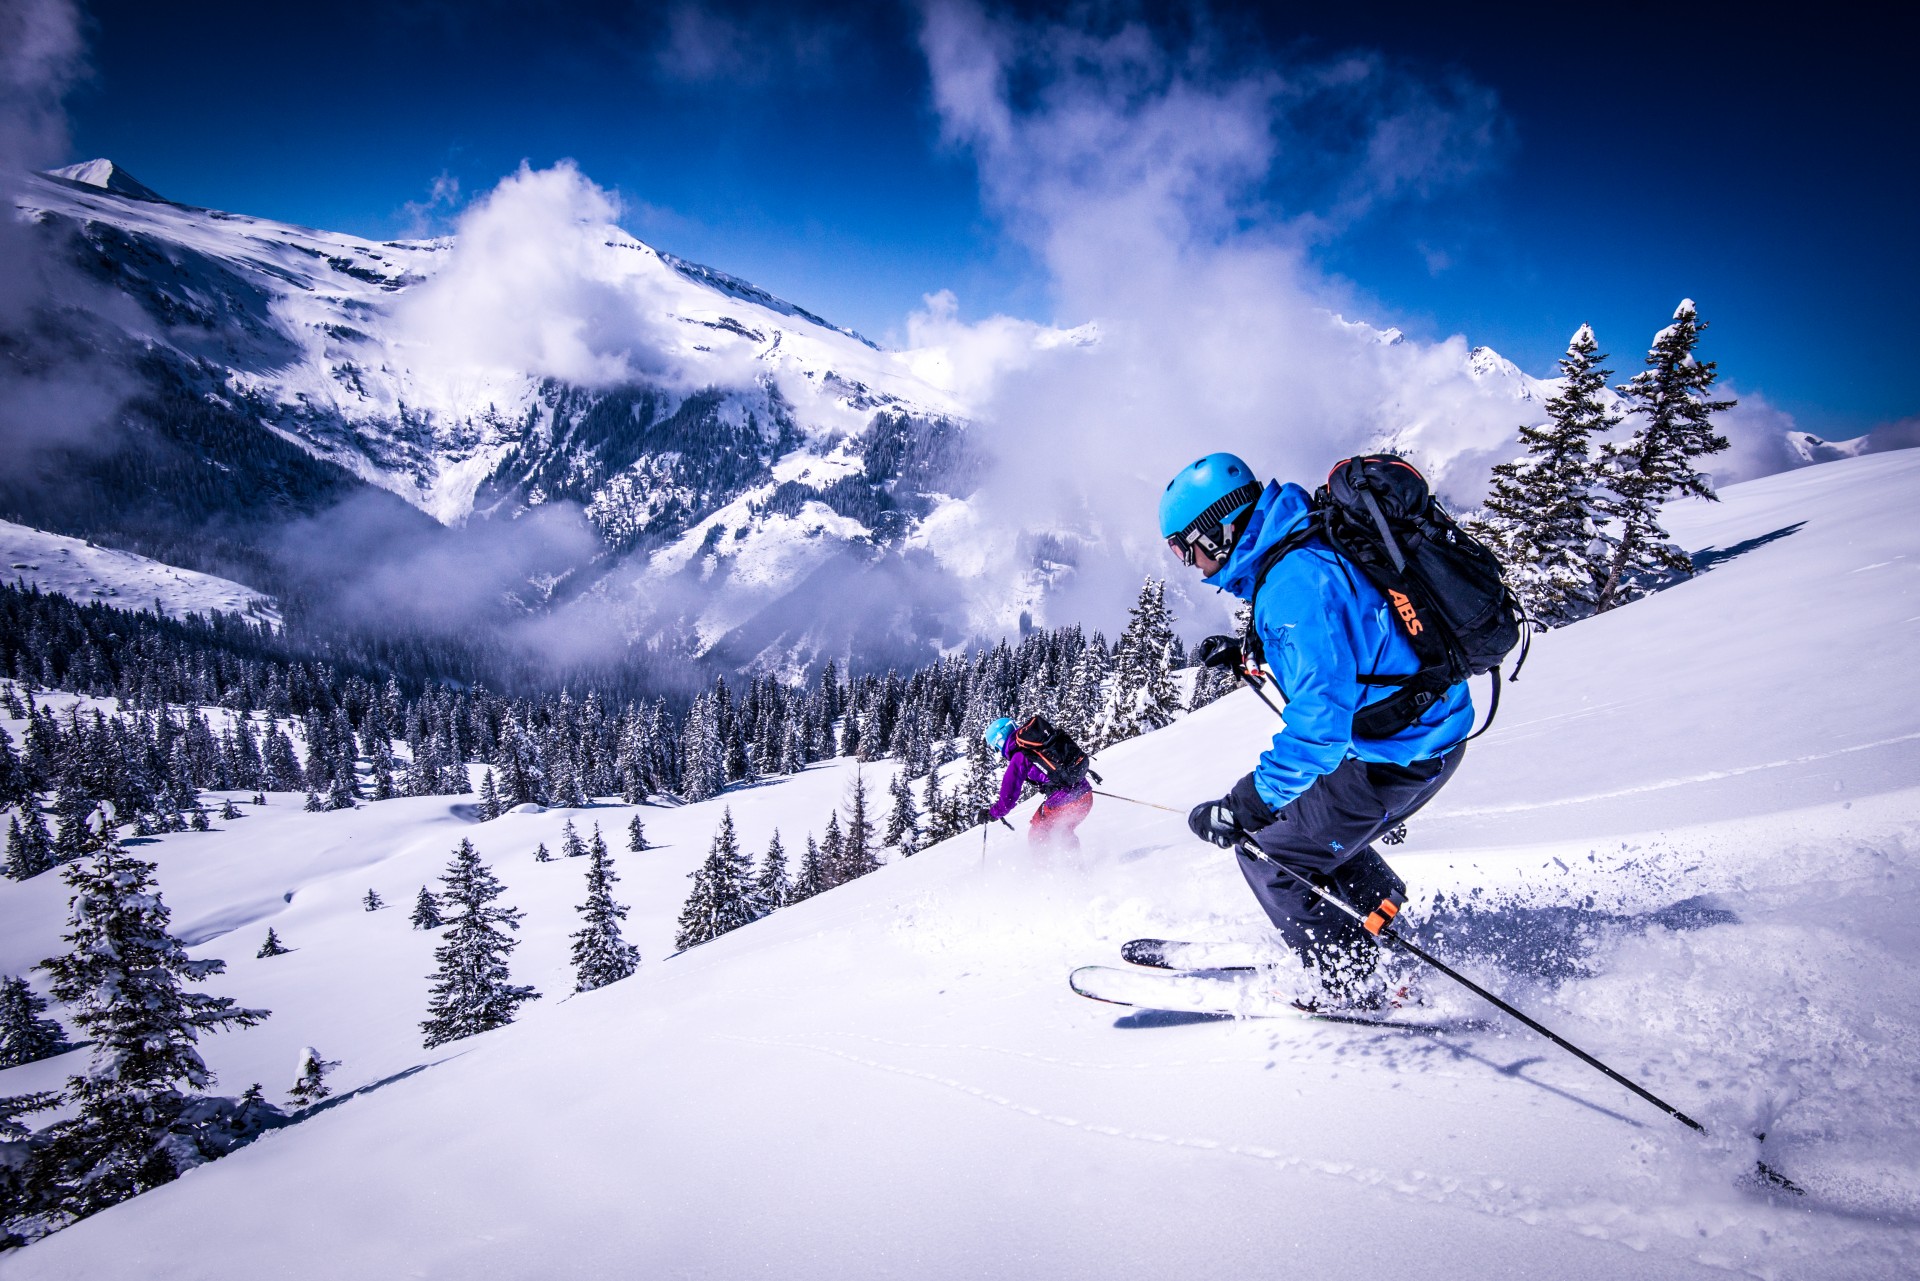 Great skiing. Горнолыжный туризм. Катание на горных лыжах. Горные лыжи туризм. Лыжник в горах.